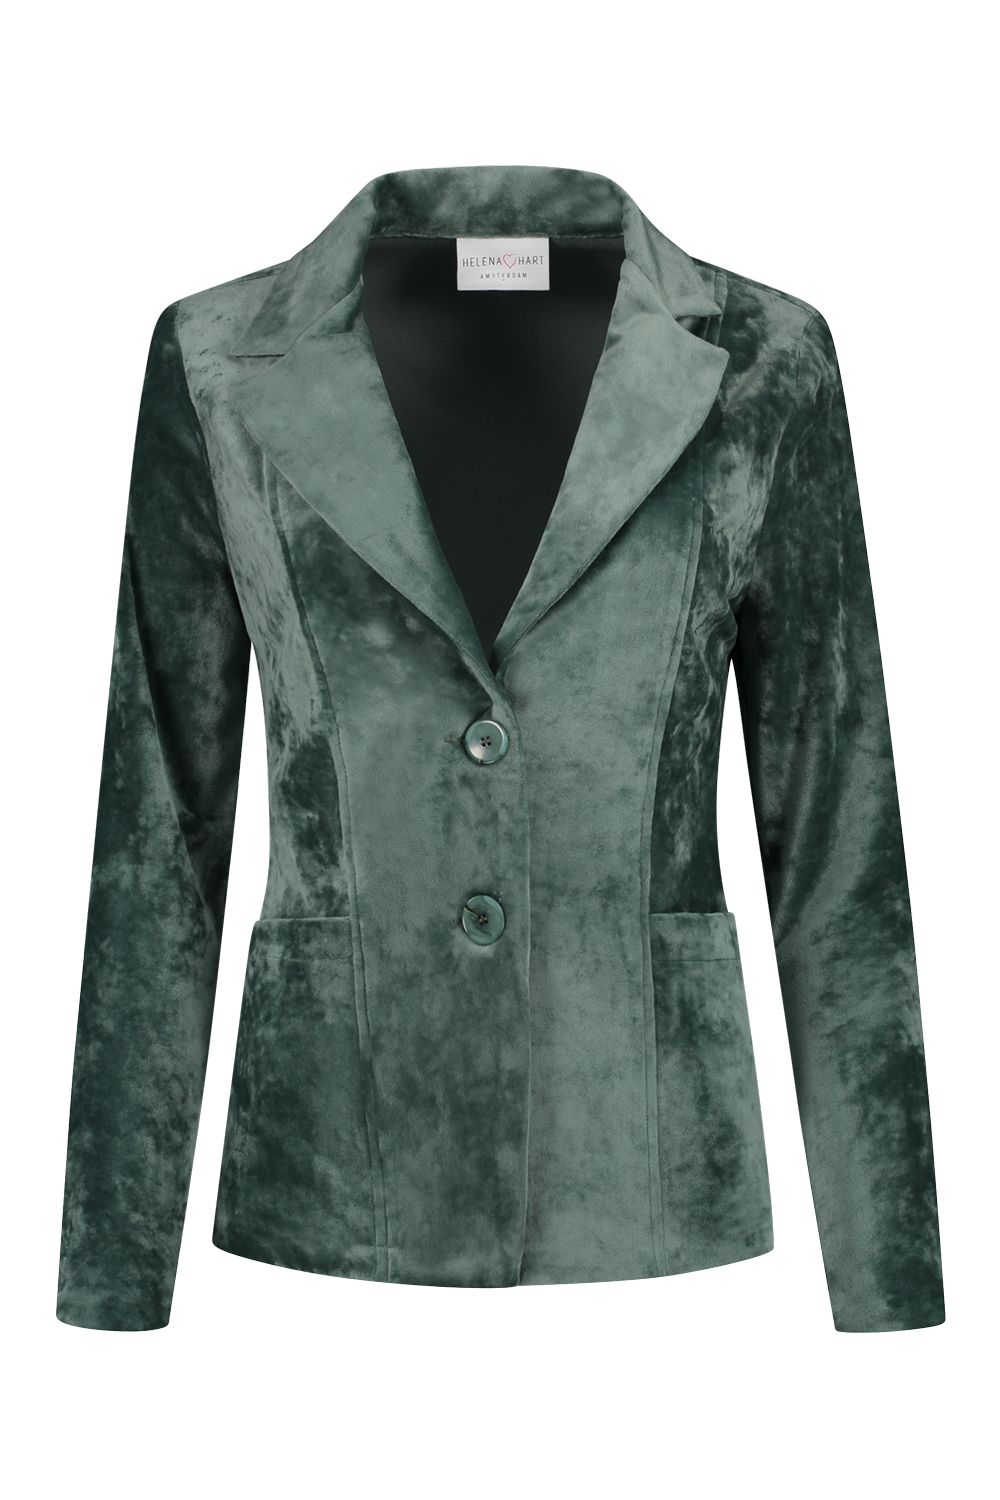 Beven Leugen Afm Helena Hart blazer velour kort emerald online kopen bij Fier Mode. 7424  Uni-emerald